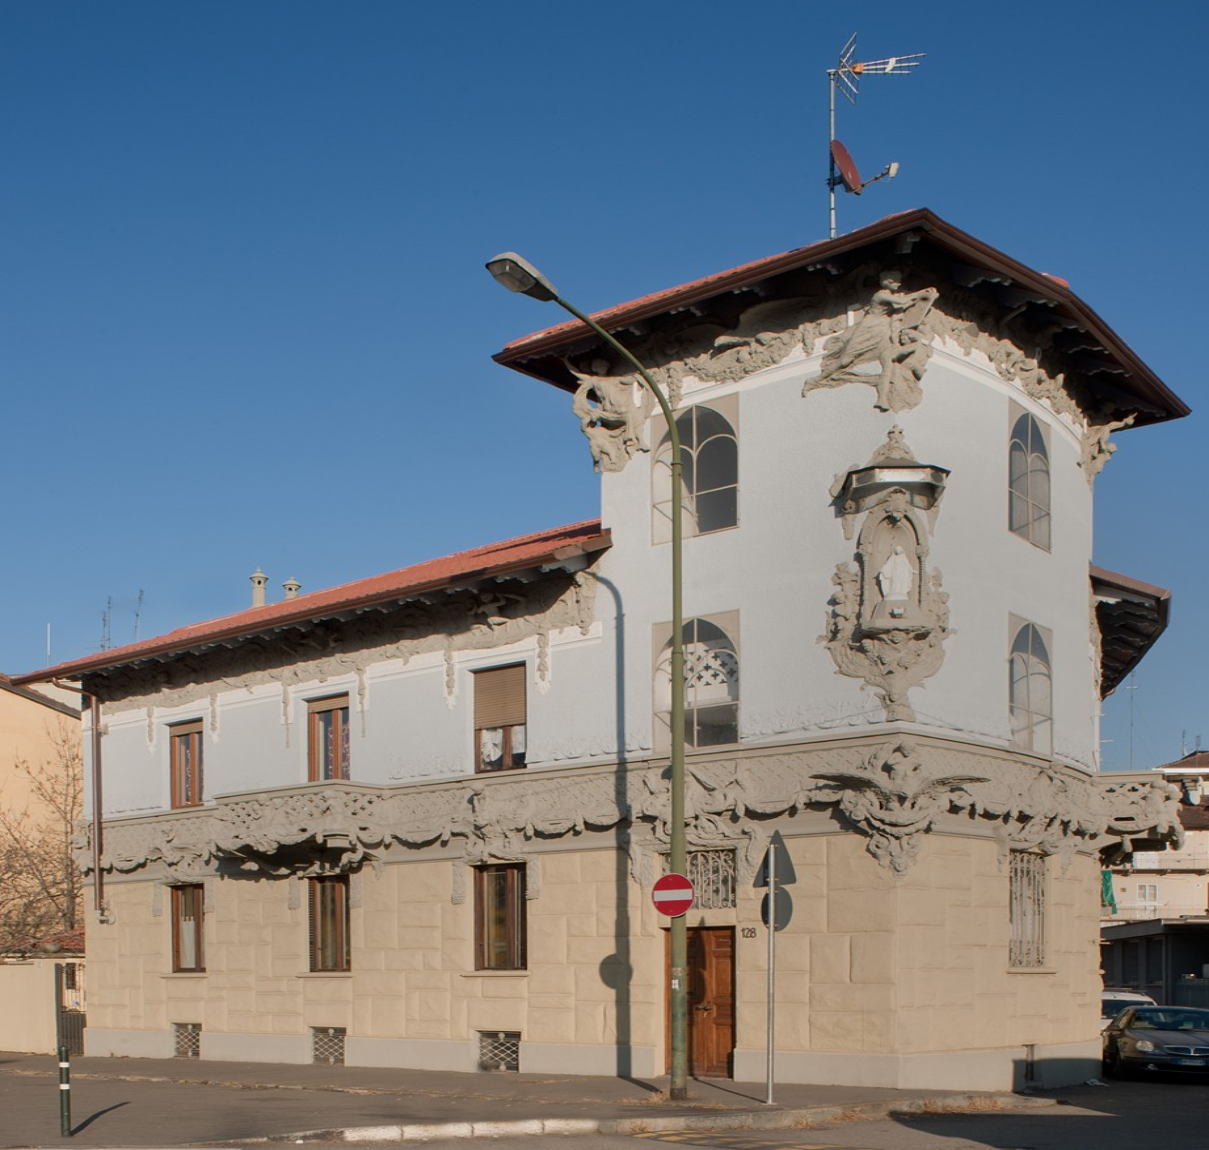 Casa Ponchia a Torino: un esempio liberty in Madonna di Campagna